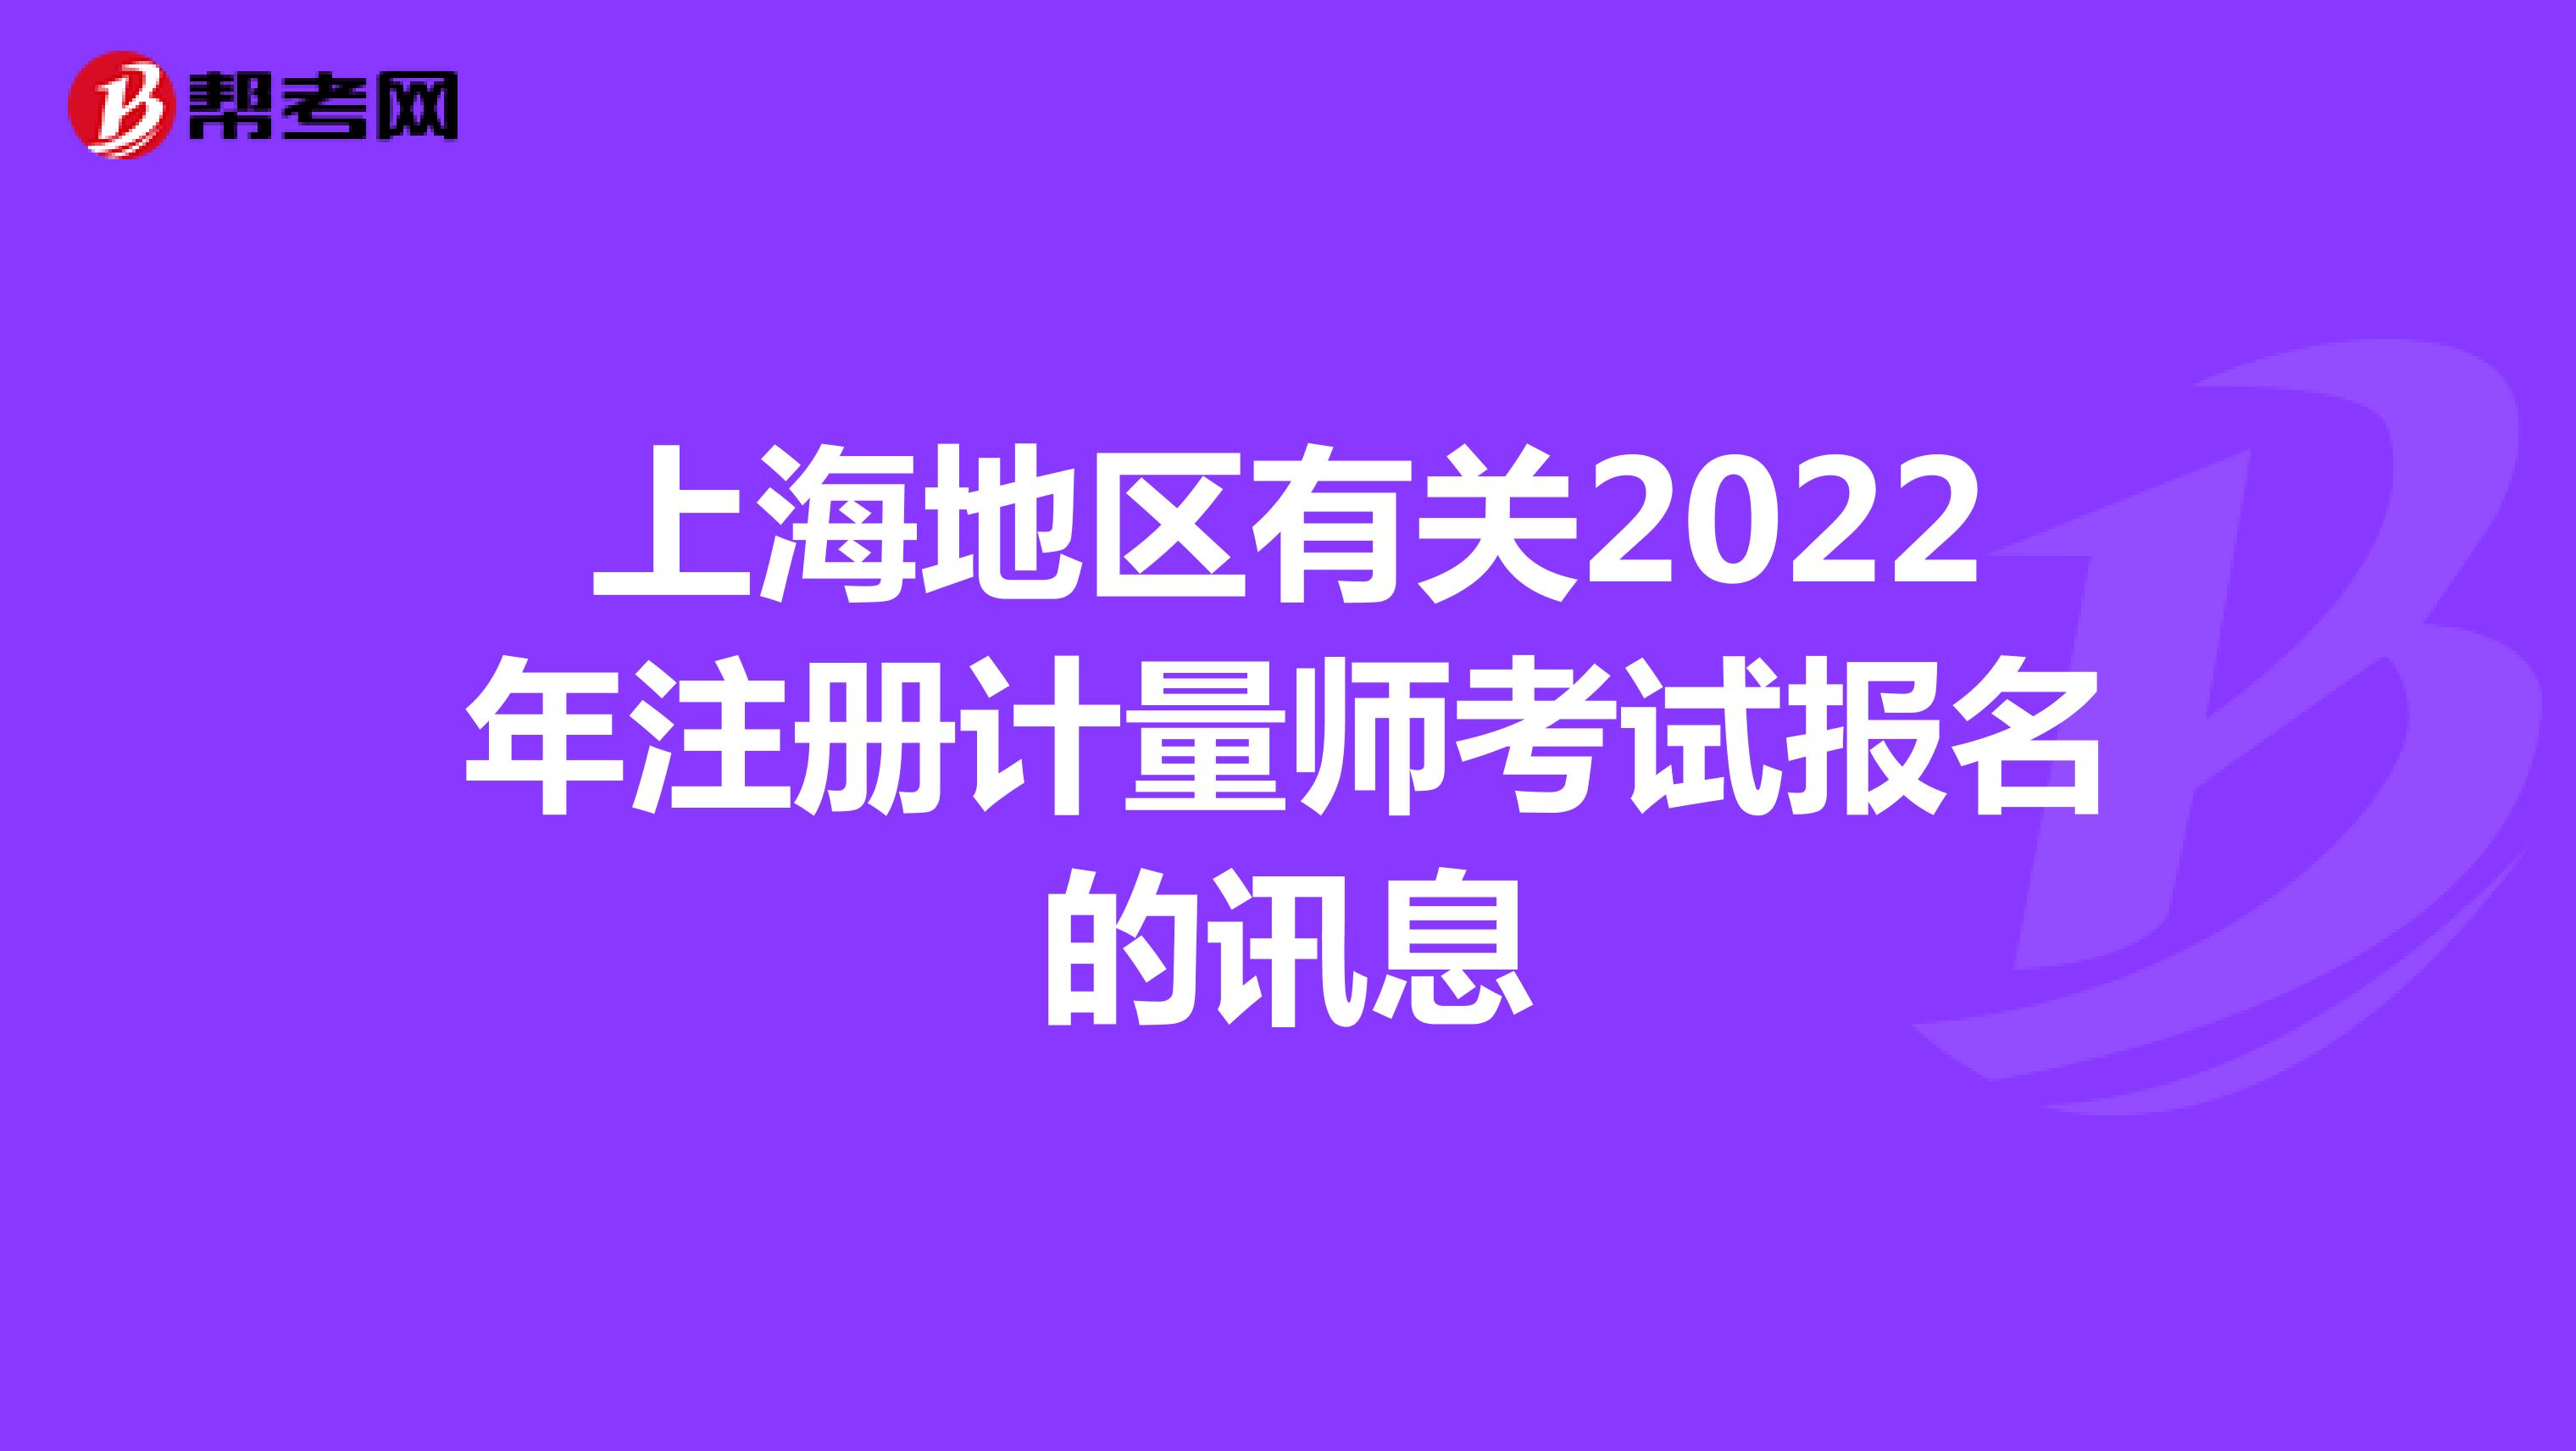 上海地区有关2022年注册计量师考试报名的讯息